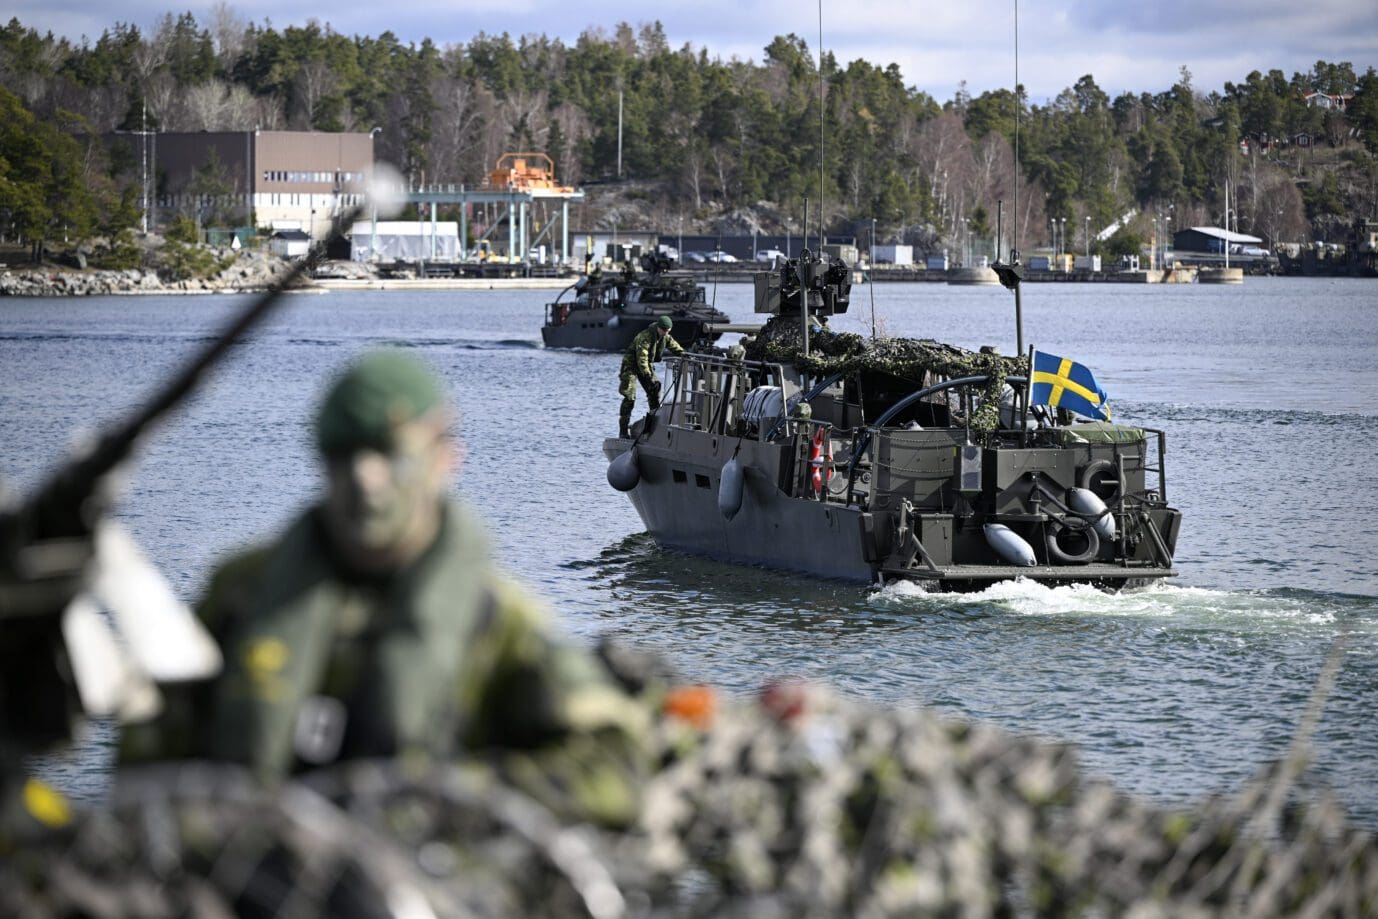 festung-im-norden:-schweden-staerkt-die-nato-erheblich-mit-ikea-und-stridsvagn